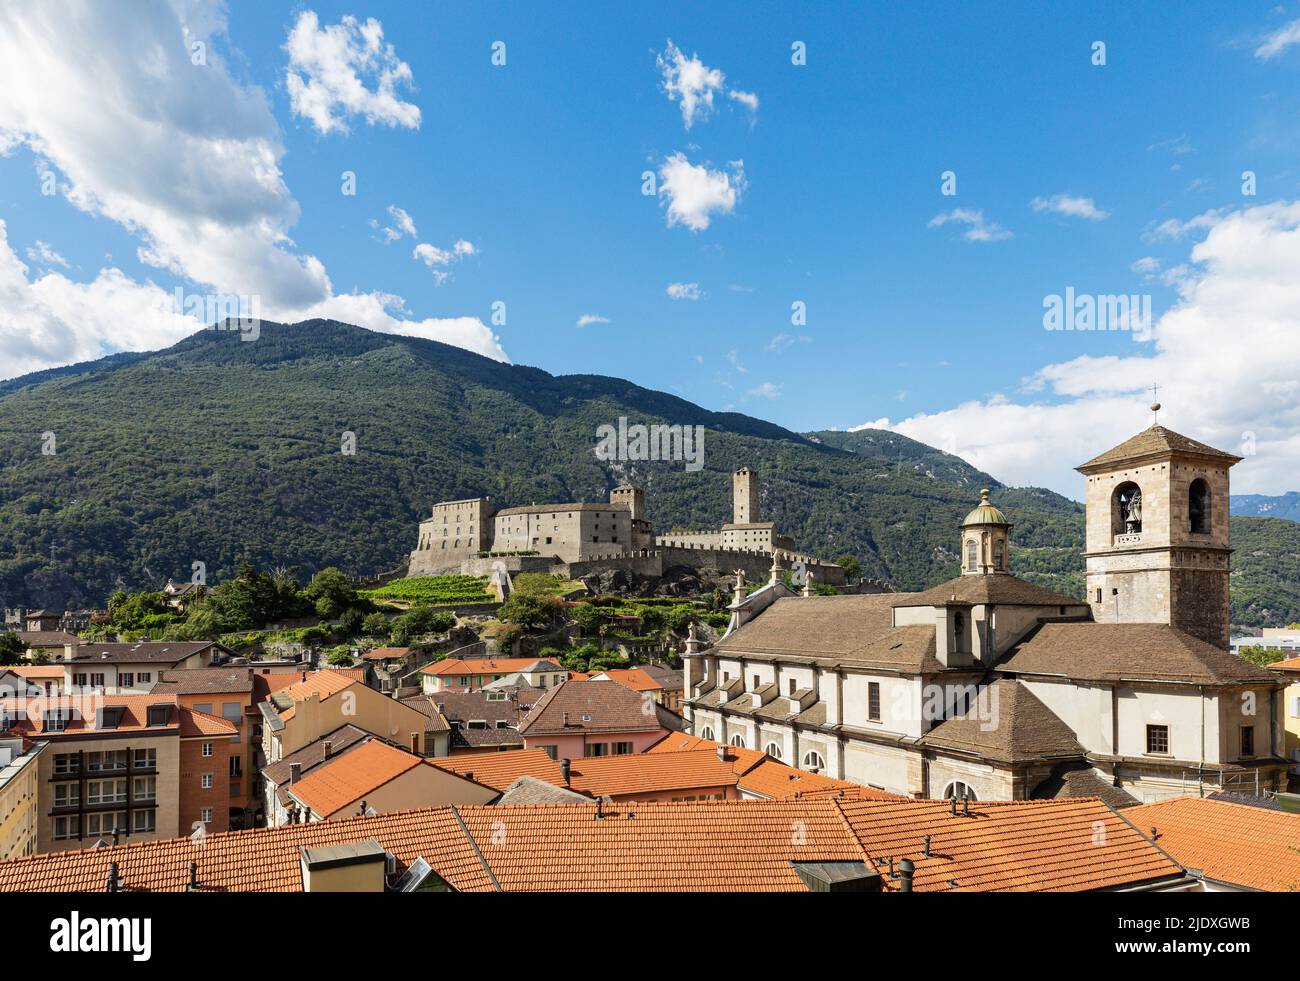 Schweiz, Tessin, Bellinzona, Blick auf die historische Stadt am Fuße der Alpen Stockfoto